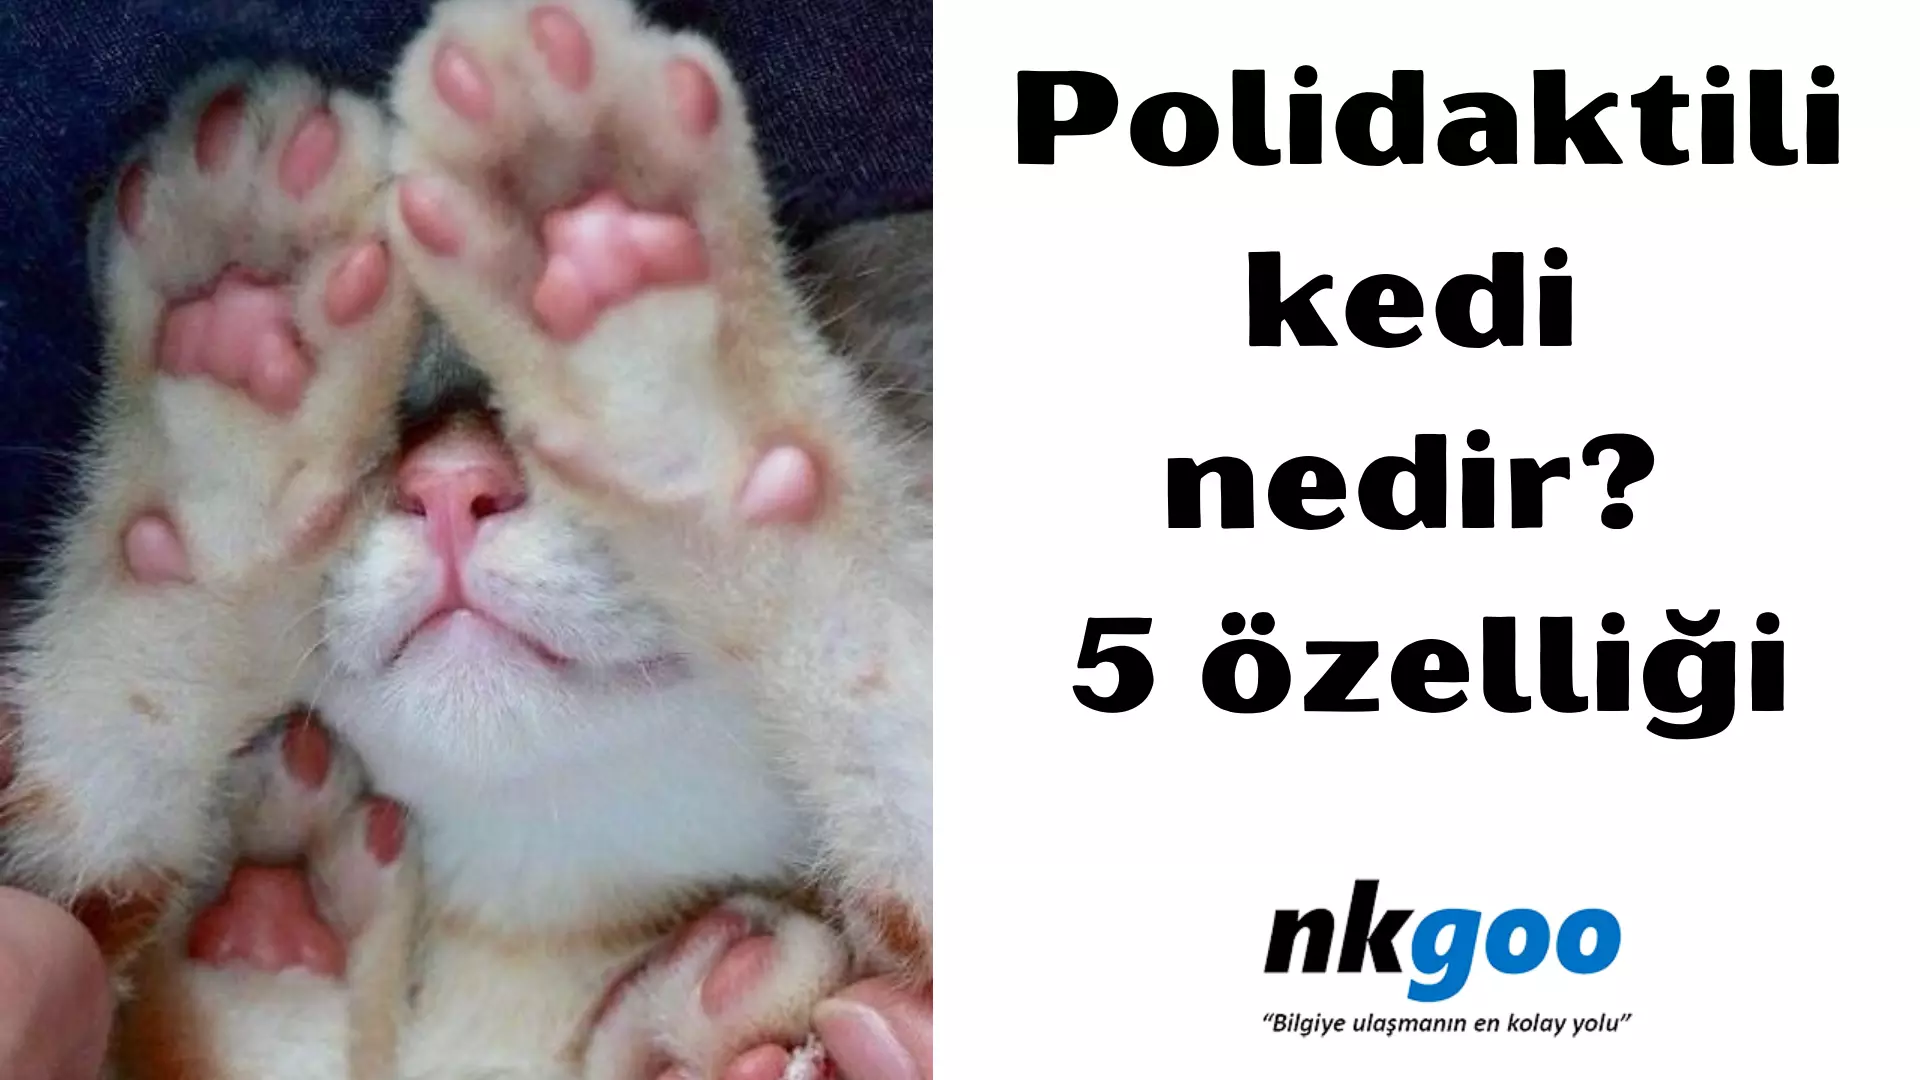 Polidaktili kedi nedir? 5 özelliği nelerdir?